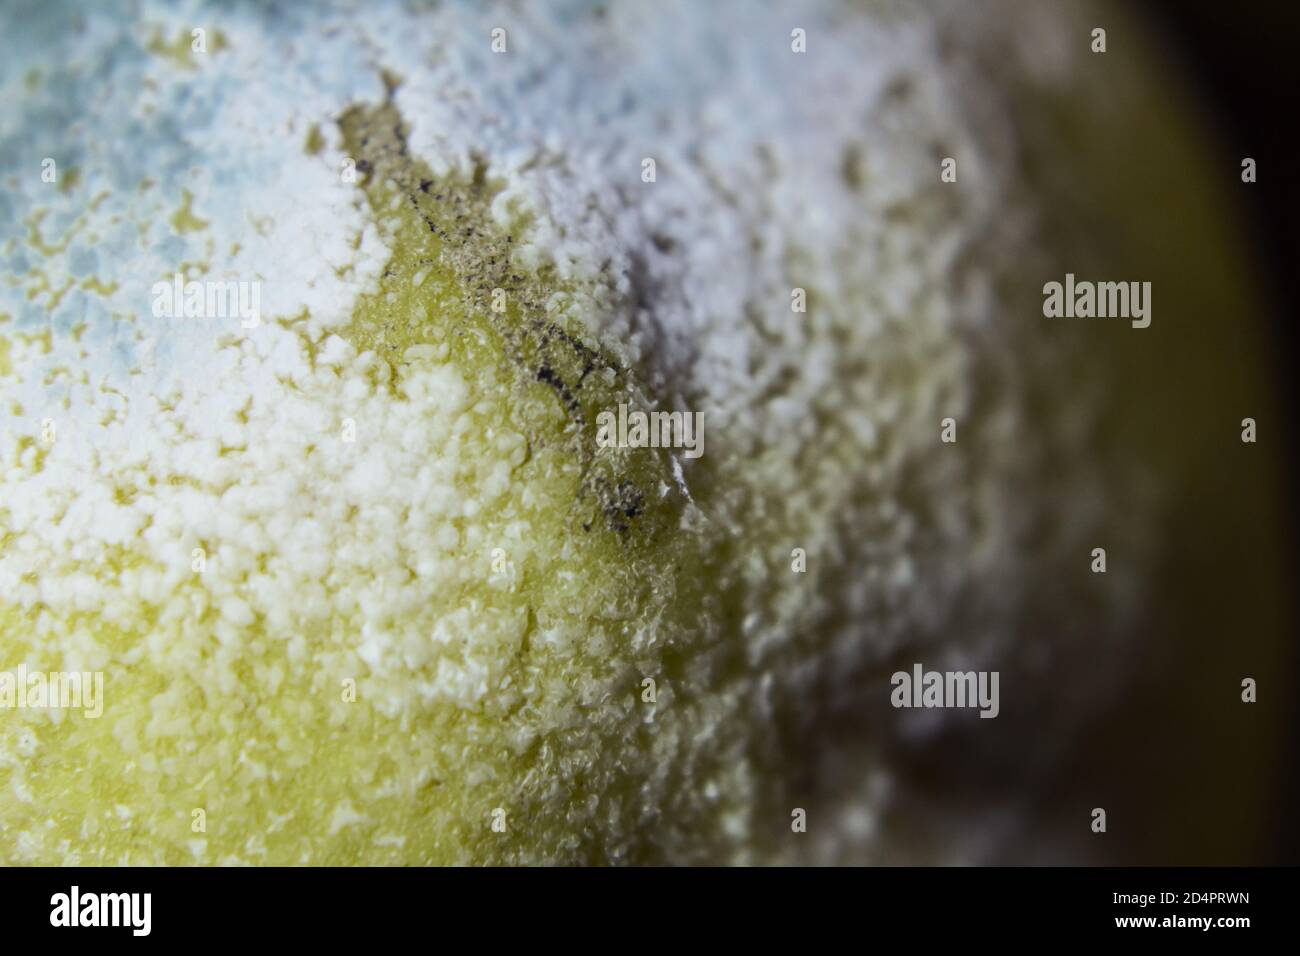 Détail du moule sur la surface d'un citron - Macro Banque D'Images